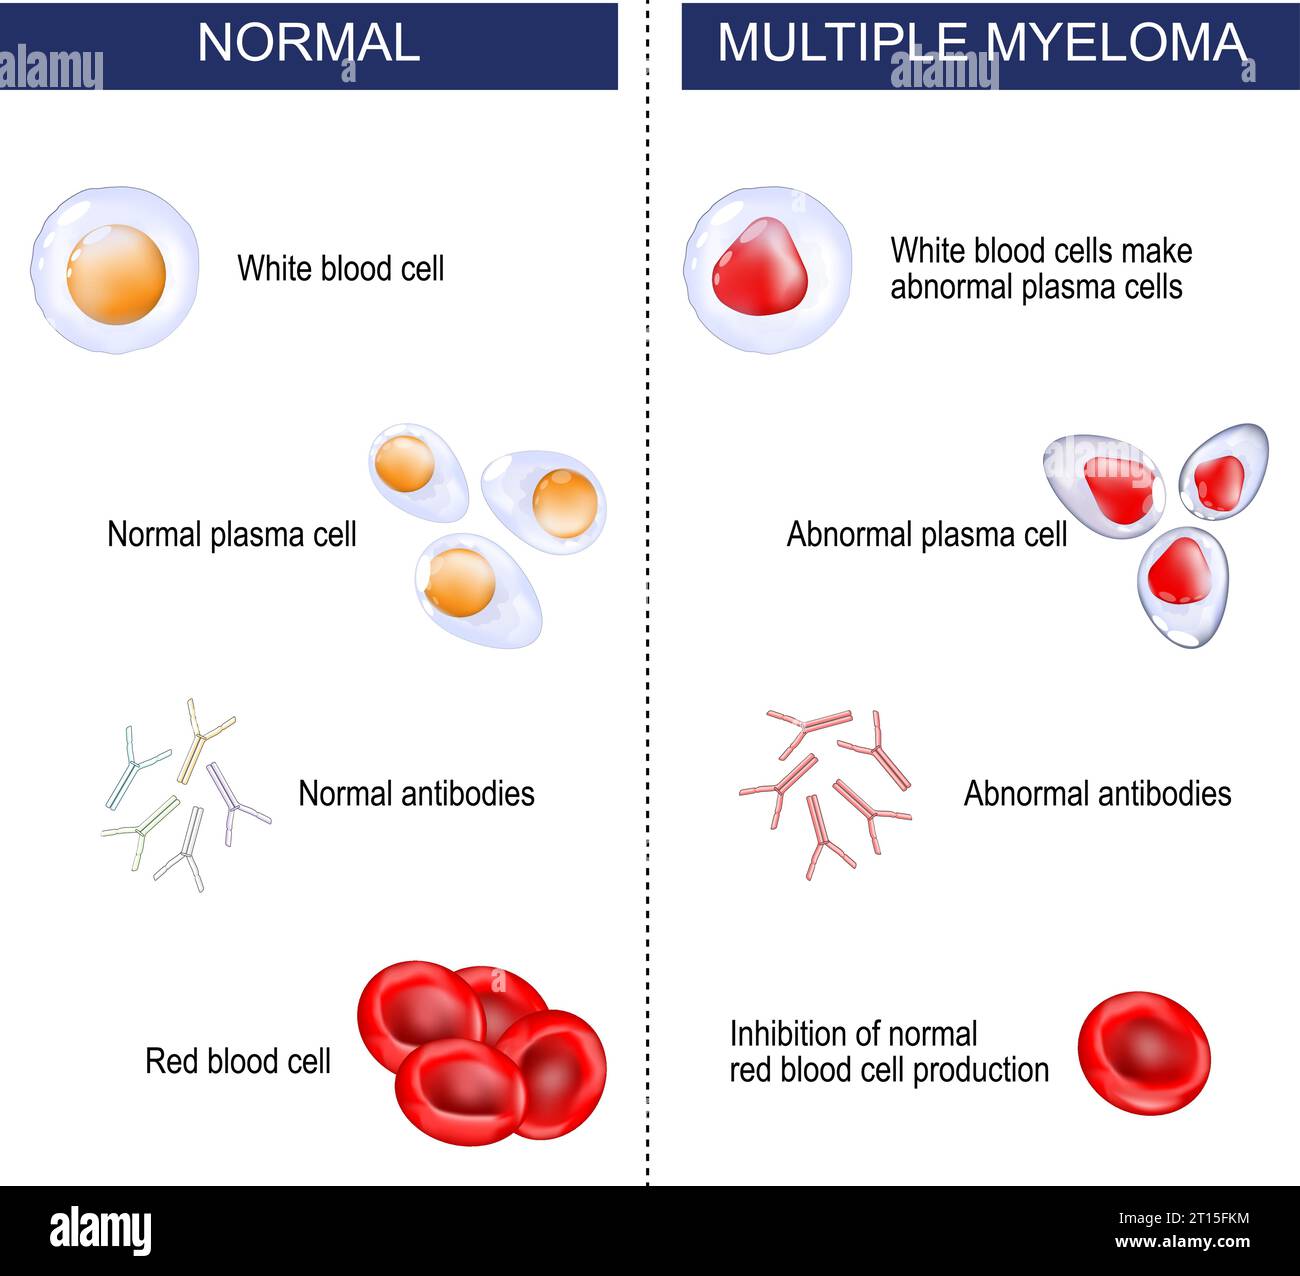 Myélome multiple. Différence entre malignité normale et hématologique. les leucocytes mutent et produisent des plasmocytes anormaux. Le myélome supprime le grognement Illustration de Vecteur